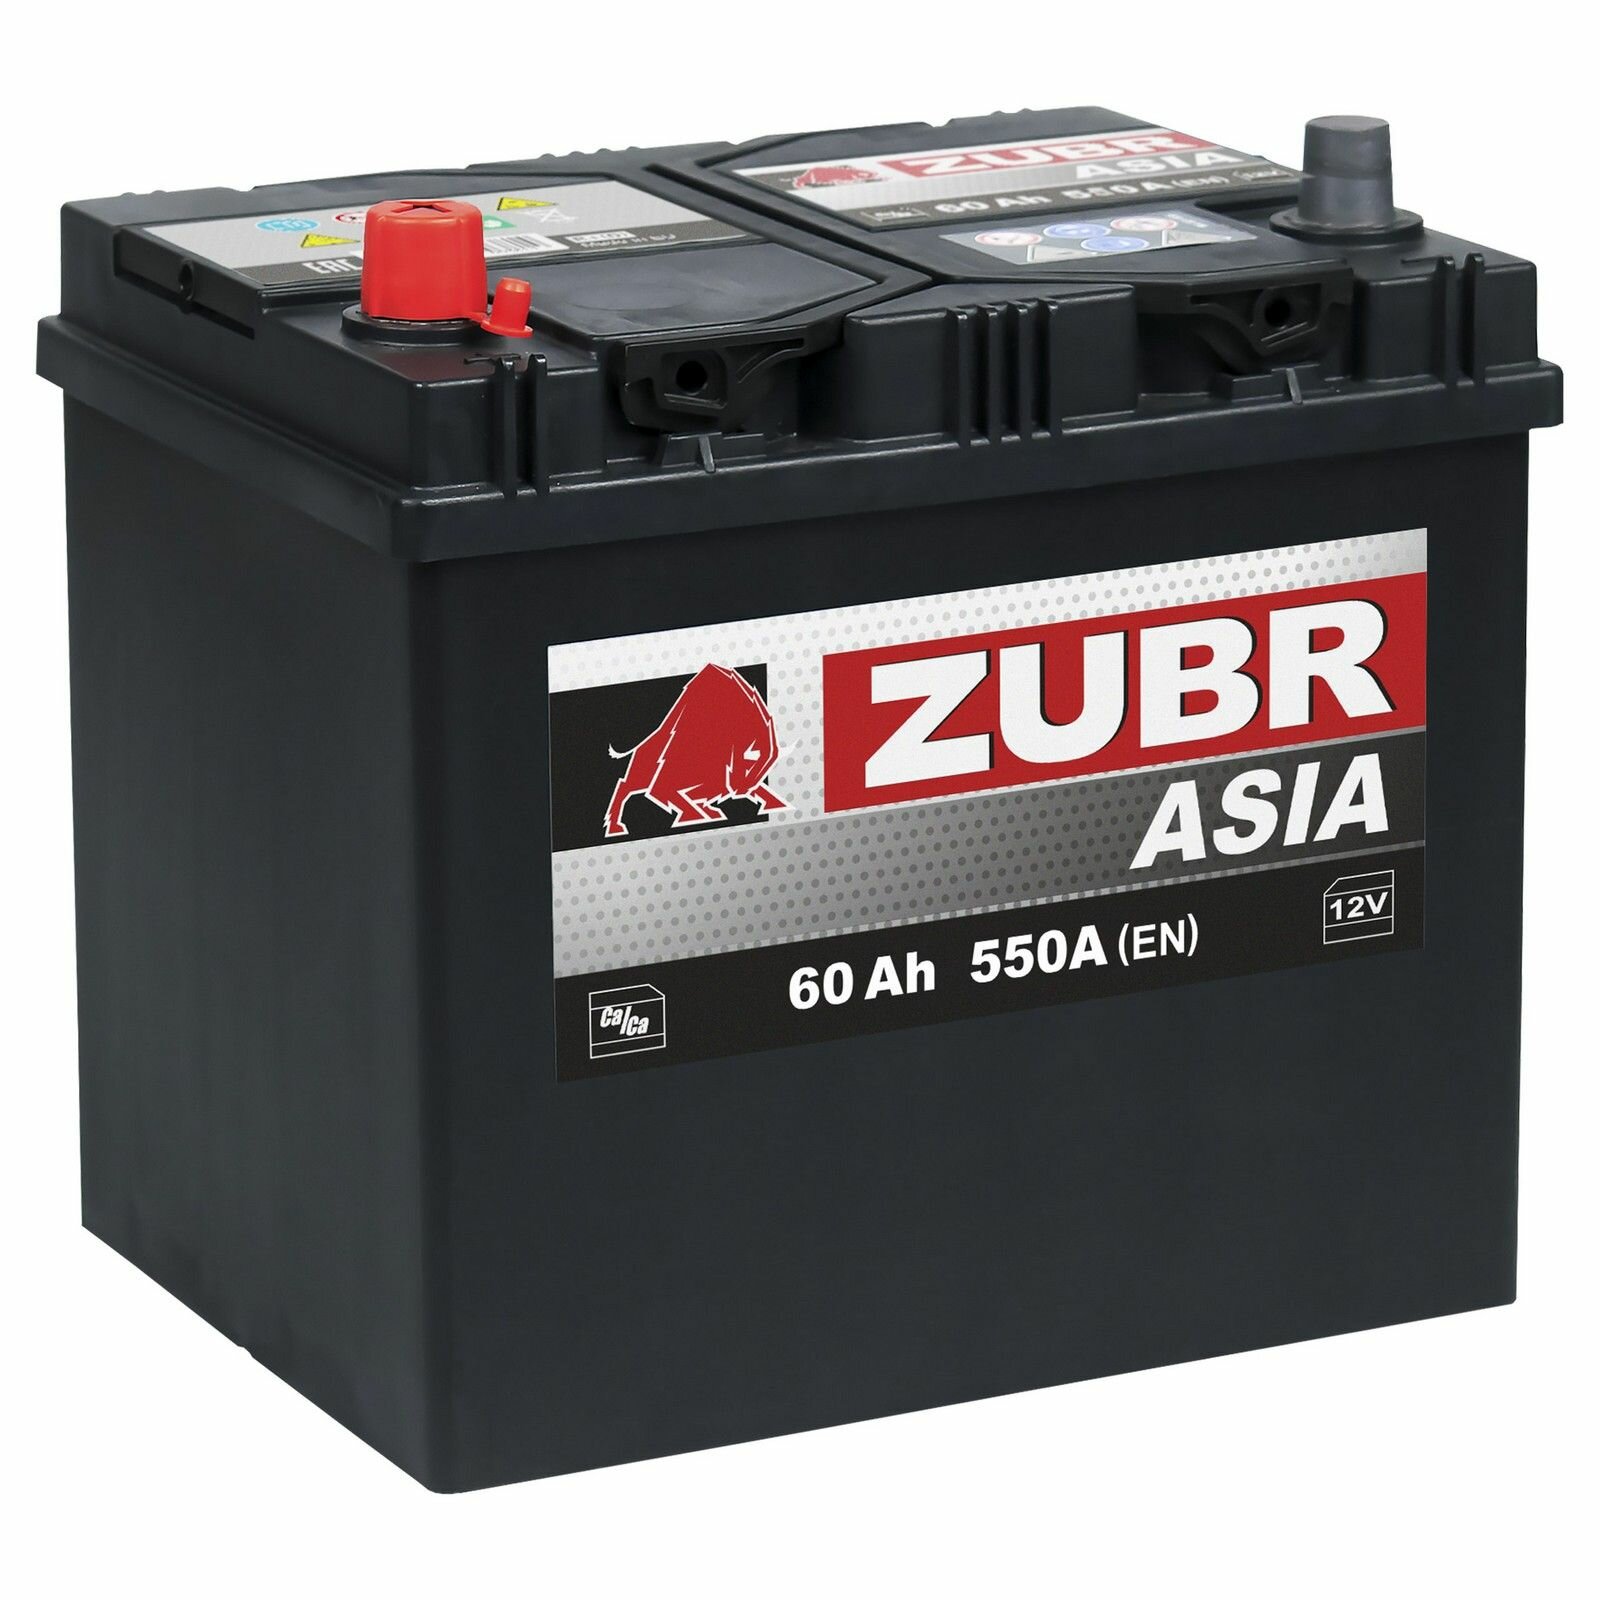 Аккумулятор автомобильный ZUBR Ultra Asia (нижний борт) 60 Ah 550 A прямая полярность 261x175x225